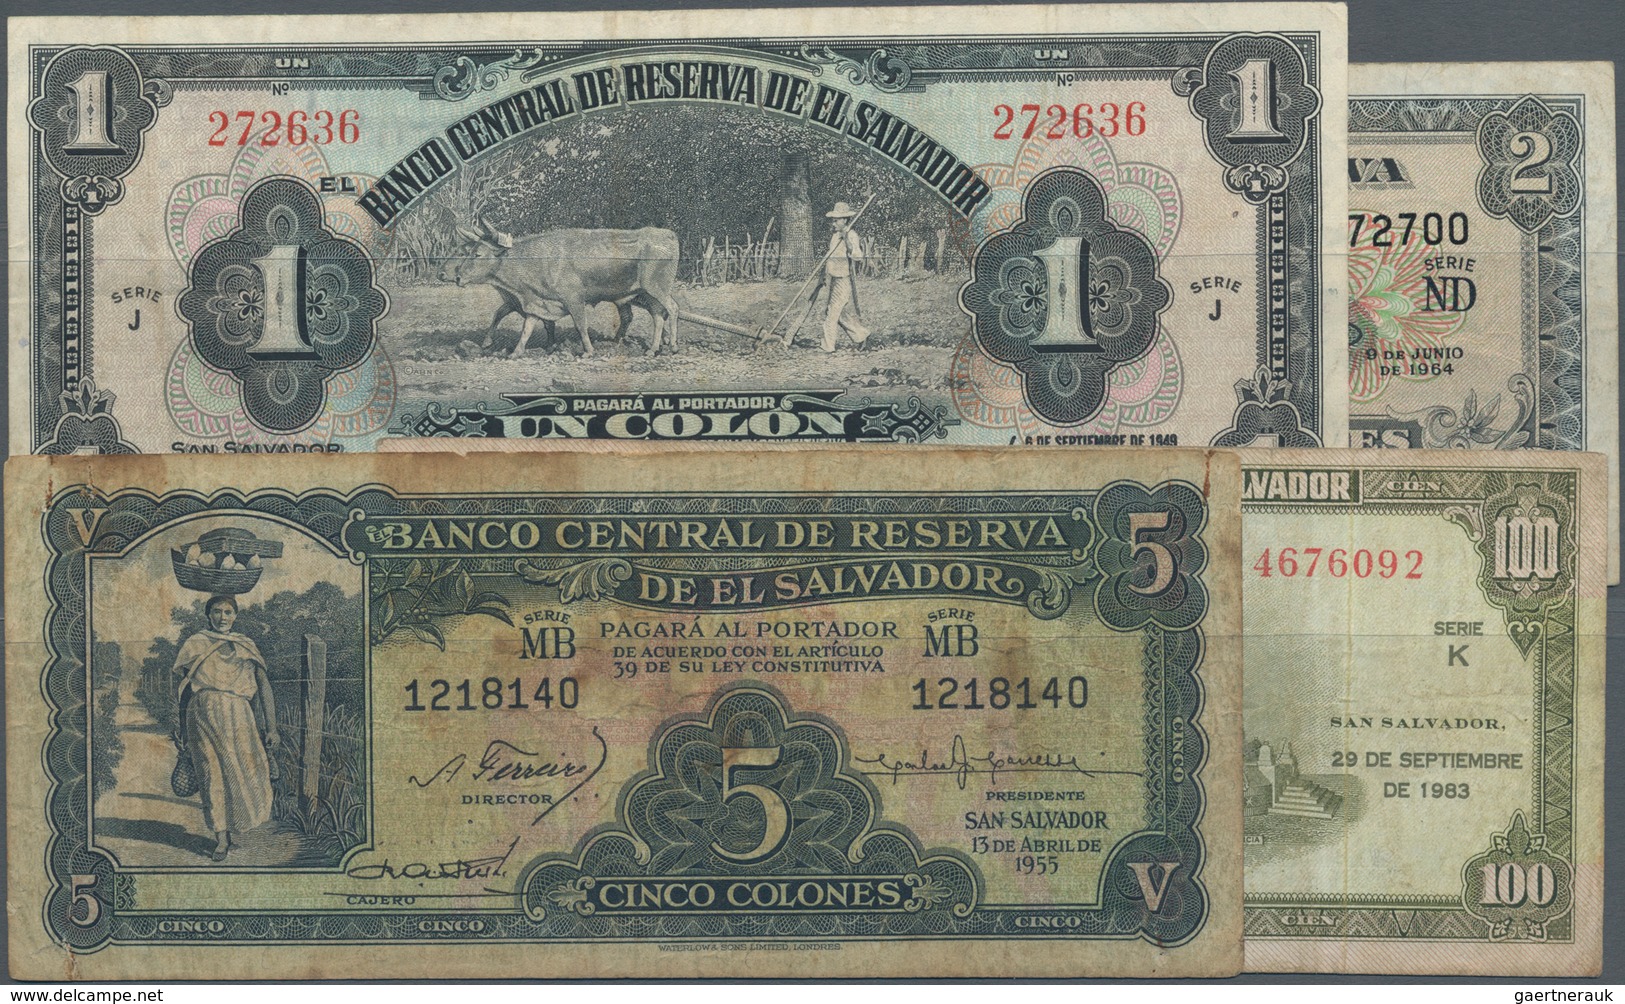 El Salvador: Nice Set With 4 Banknotes Containing 1 Colon 1949 P.83a (VF), 2 Colones 1964 P.101 (F+) - Salvador